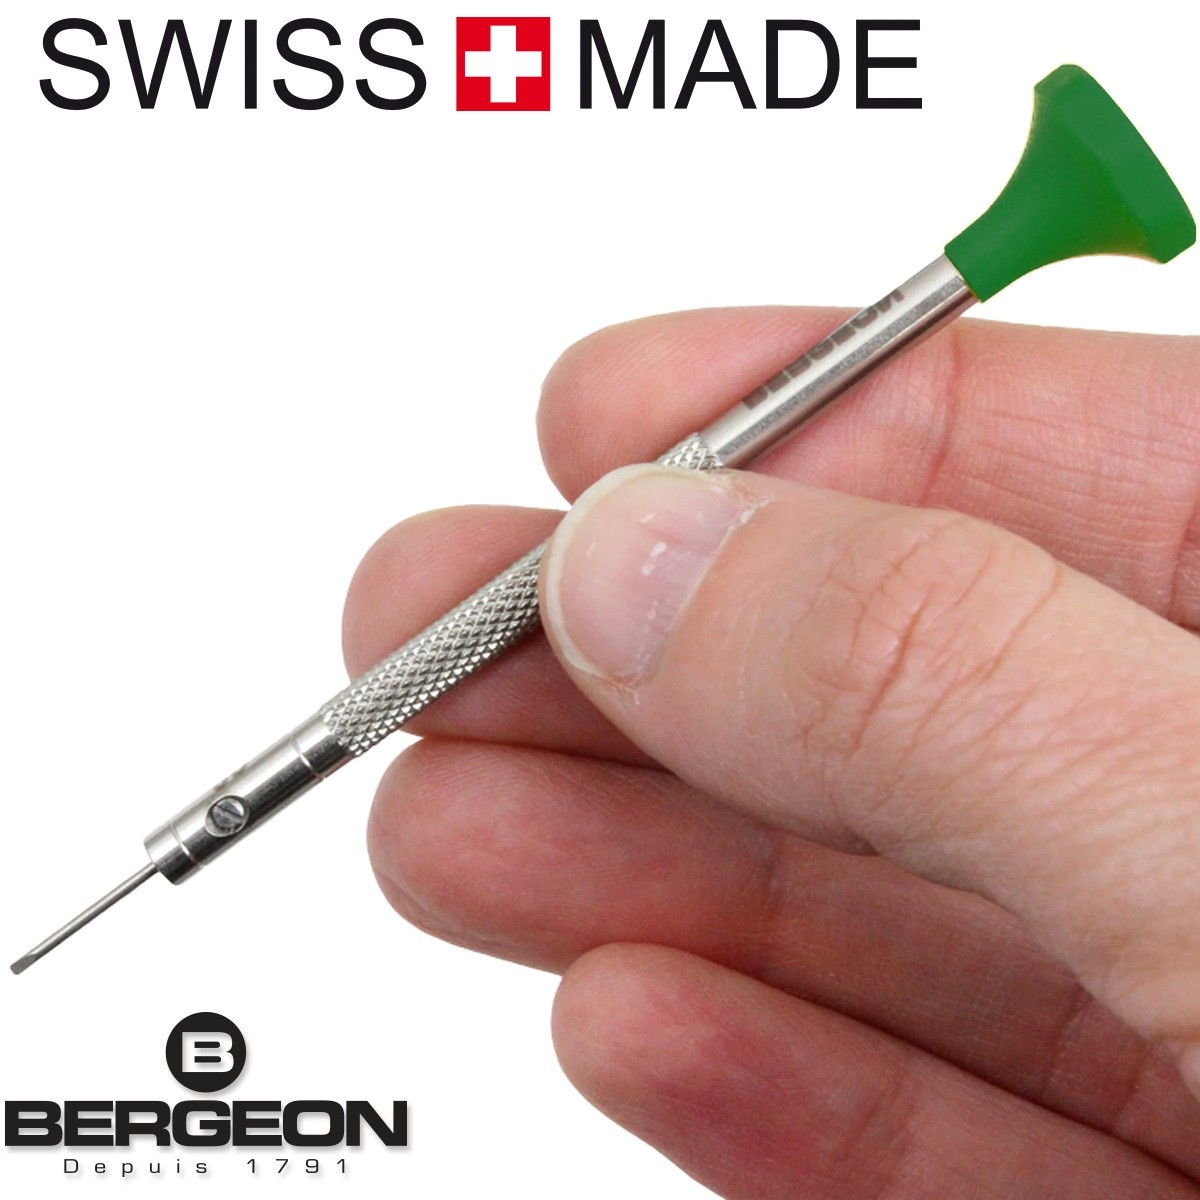 BERGEON (Switzerland) Ref. 30081-C-120 Watch Case, Strap And